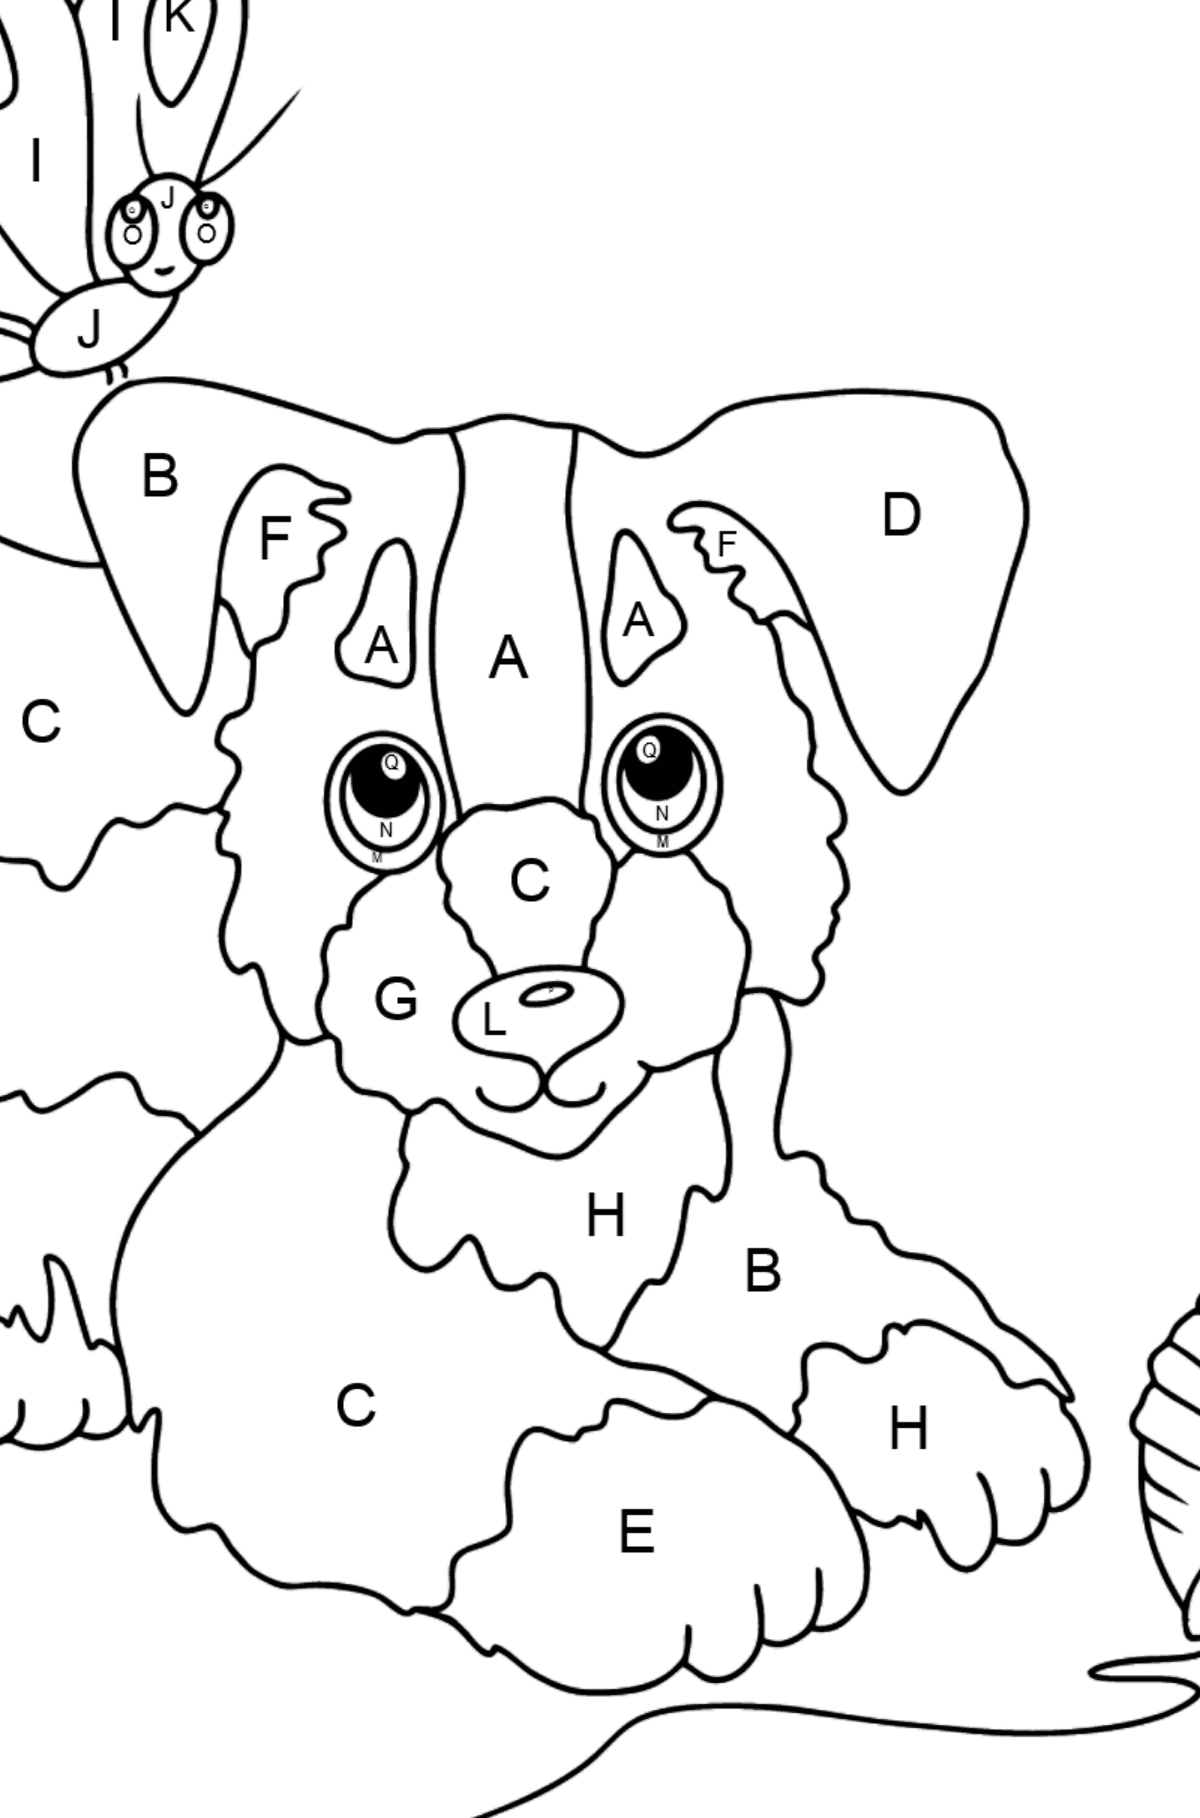 Dibujo para Colorear - Un Perro está Jugando con un Bola de Estambre y con Mariposas - Colorear por Letras para Niños